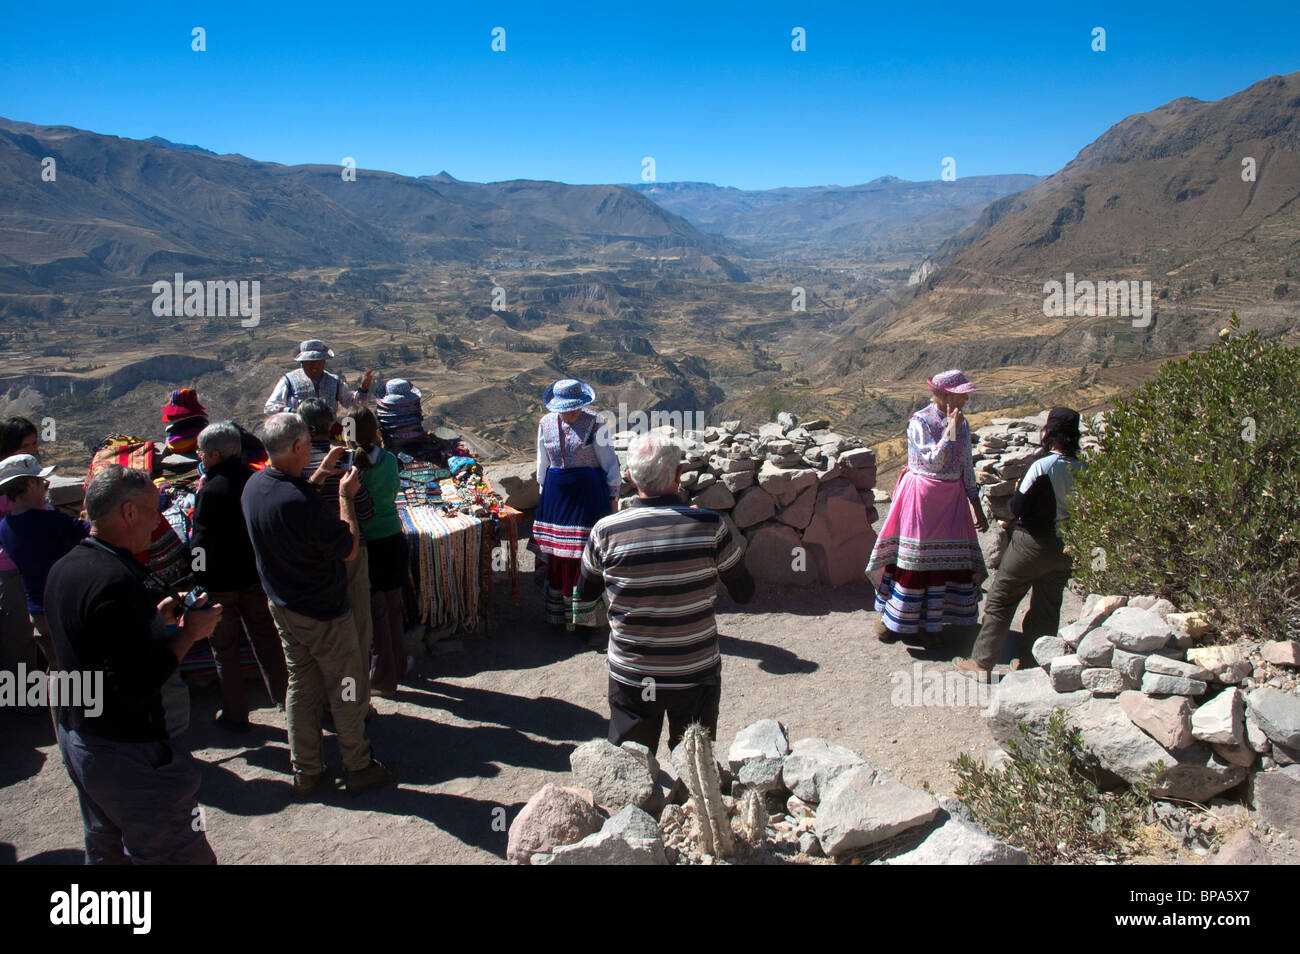 Los turistas occidentales llevan trajes locales en un mirador en el Cañón del Colca, Perú. Foto de stock